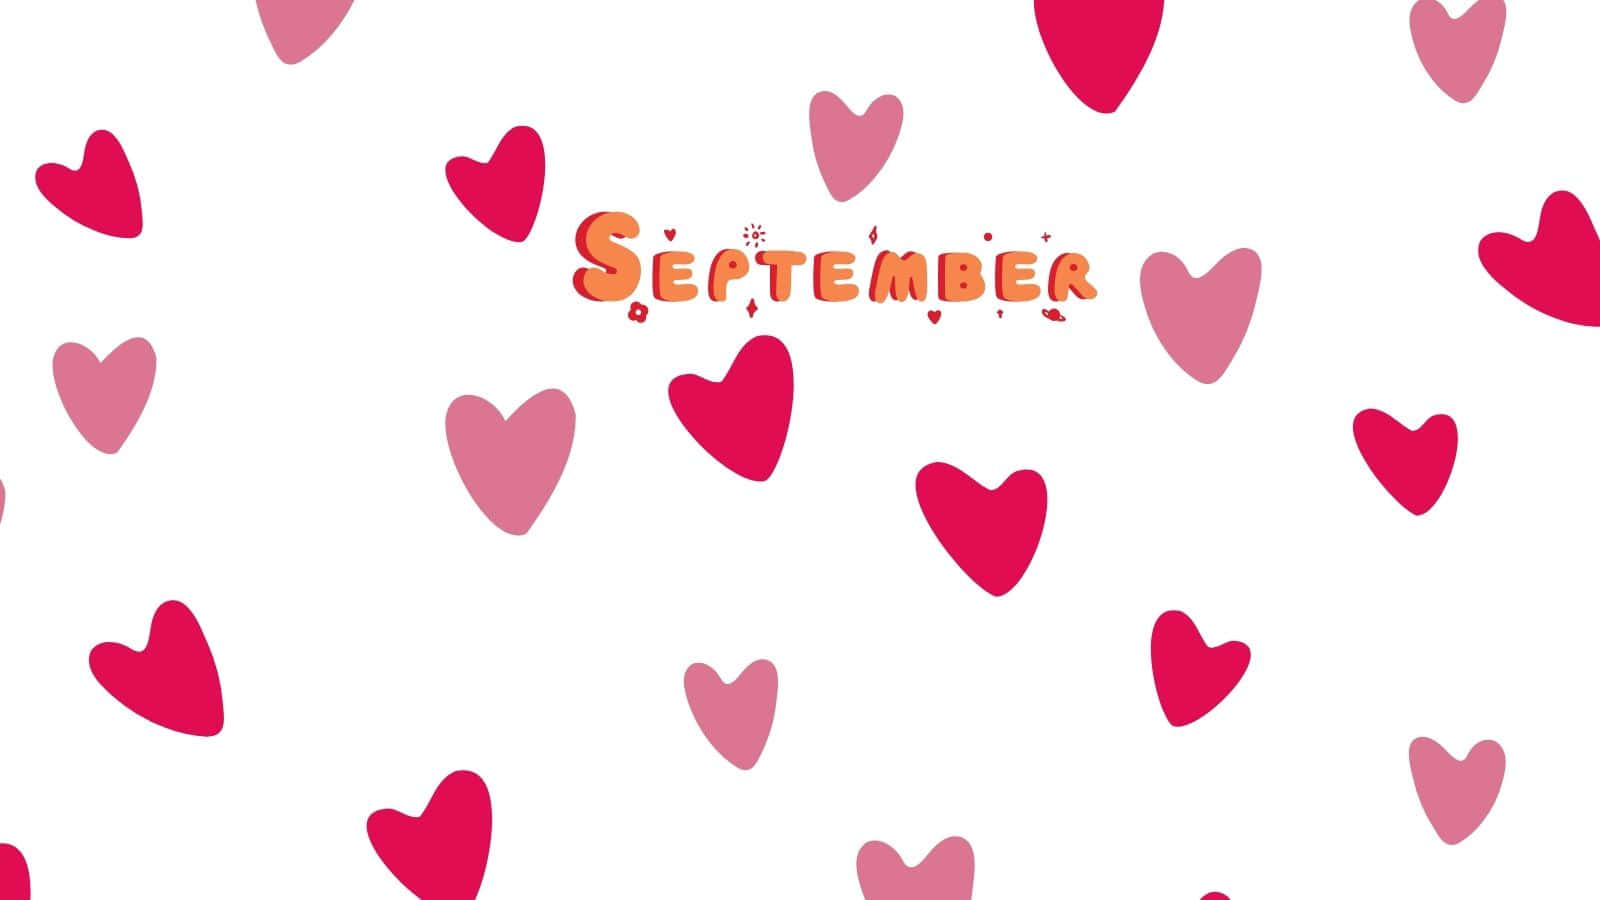 September Hearts Aesthetic Wallpaper Wallpaper